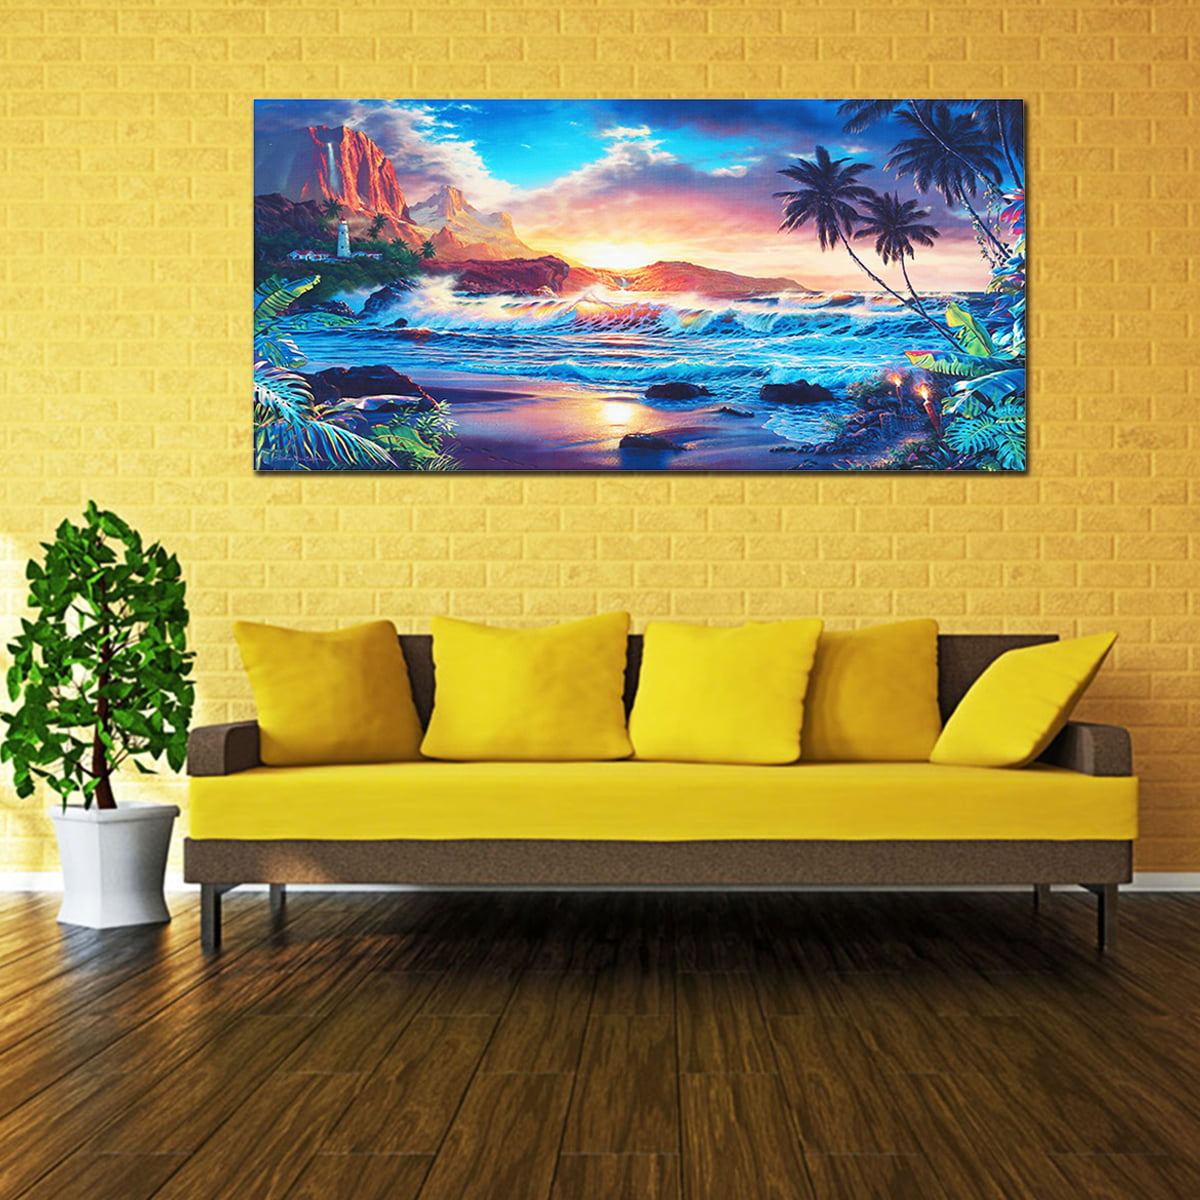 Details about  / Canvas Wall Pictures Images XXL Natural sonnenuntergan Landscape Living Room 9 show original title